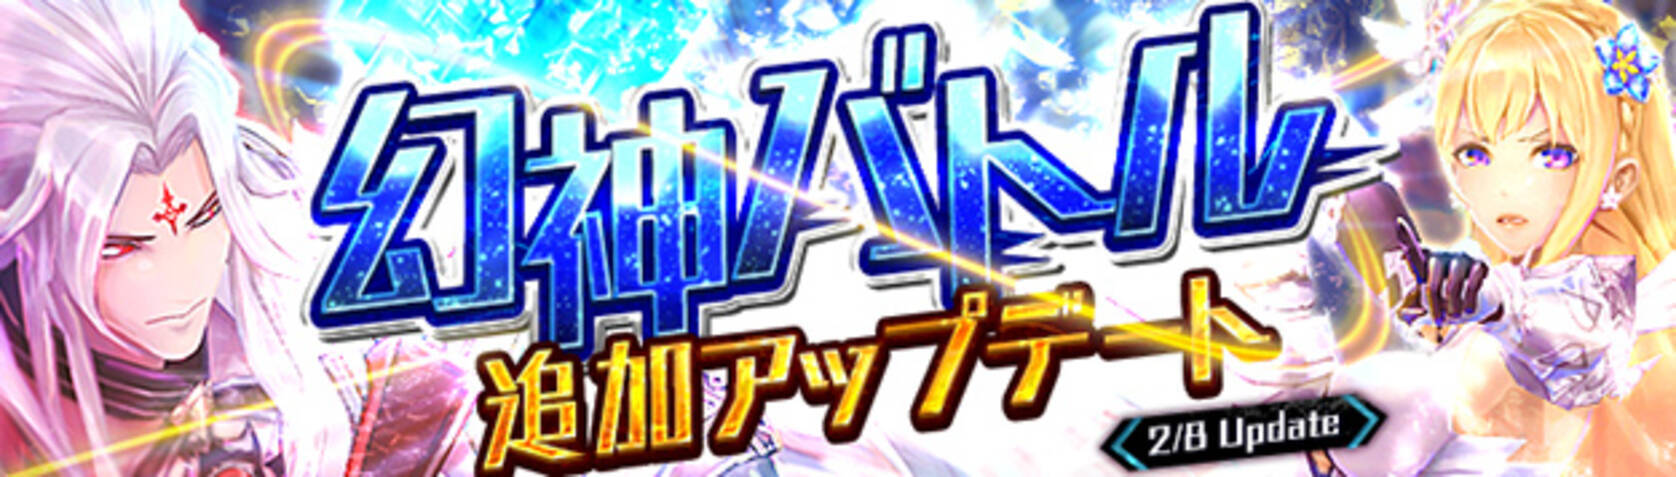 幻想神域 Cross To Fate 幻神 ミカエル ルシファー のミニペットが新登場 幻神バトル追加アップデート決定 17年2月1日 エキサイトニュース